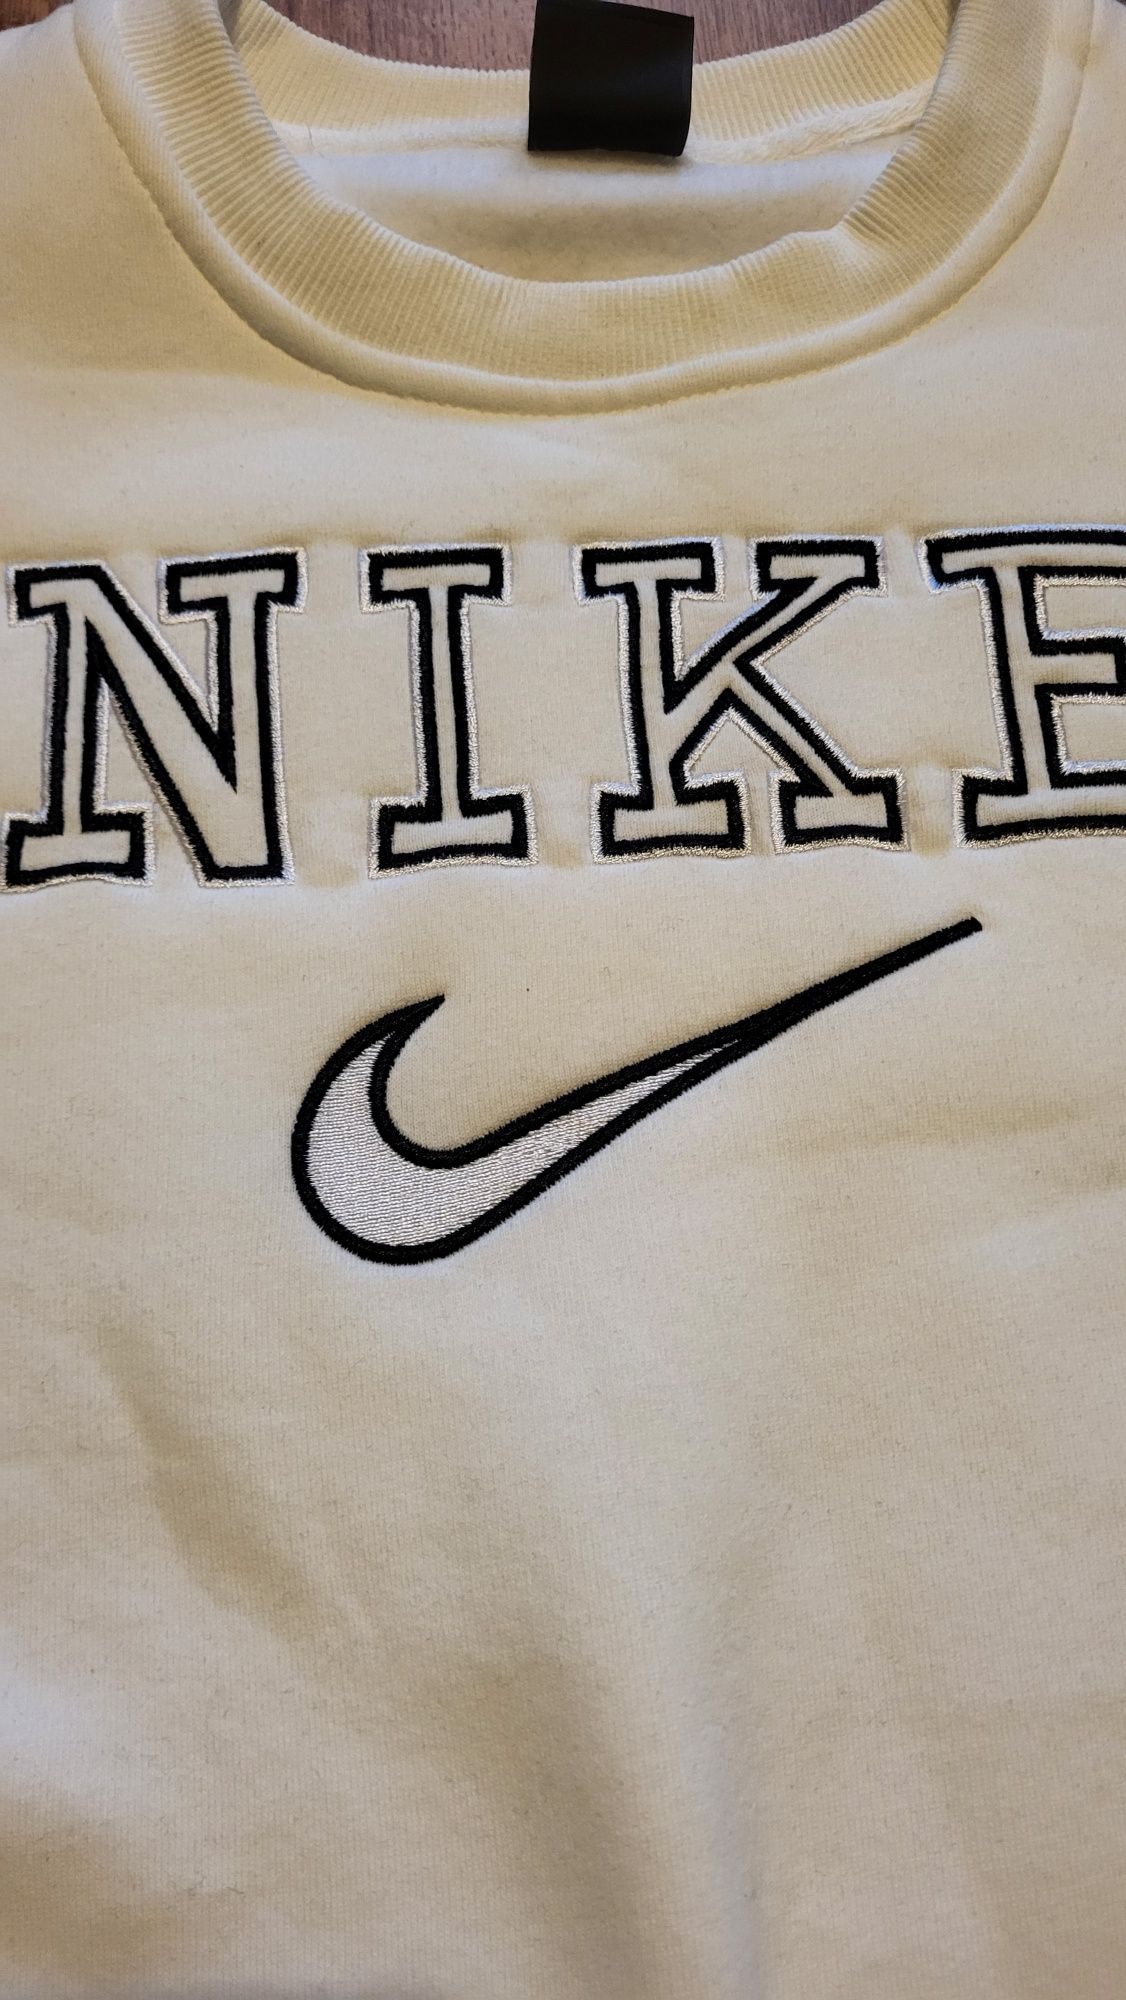 Pulover / Sweatshirt Nike Vintage Alb  - M NOU nepurtat